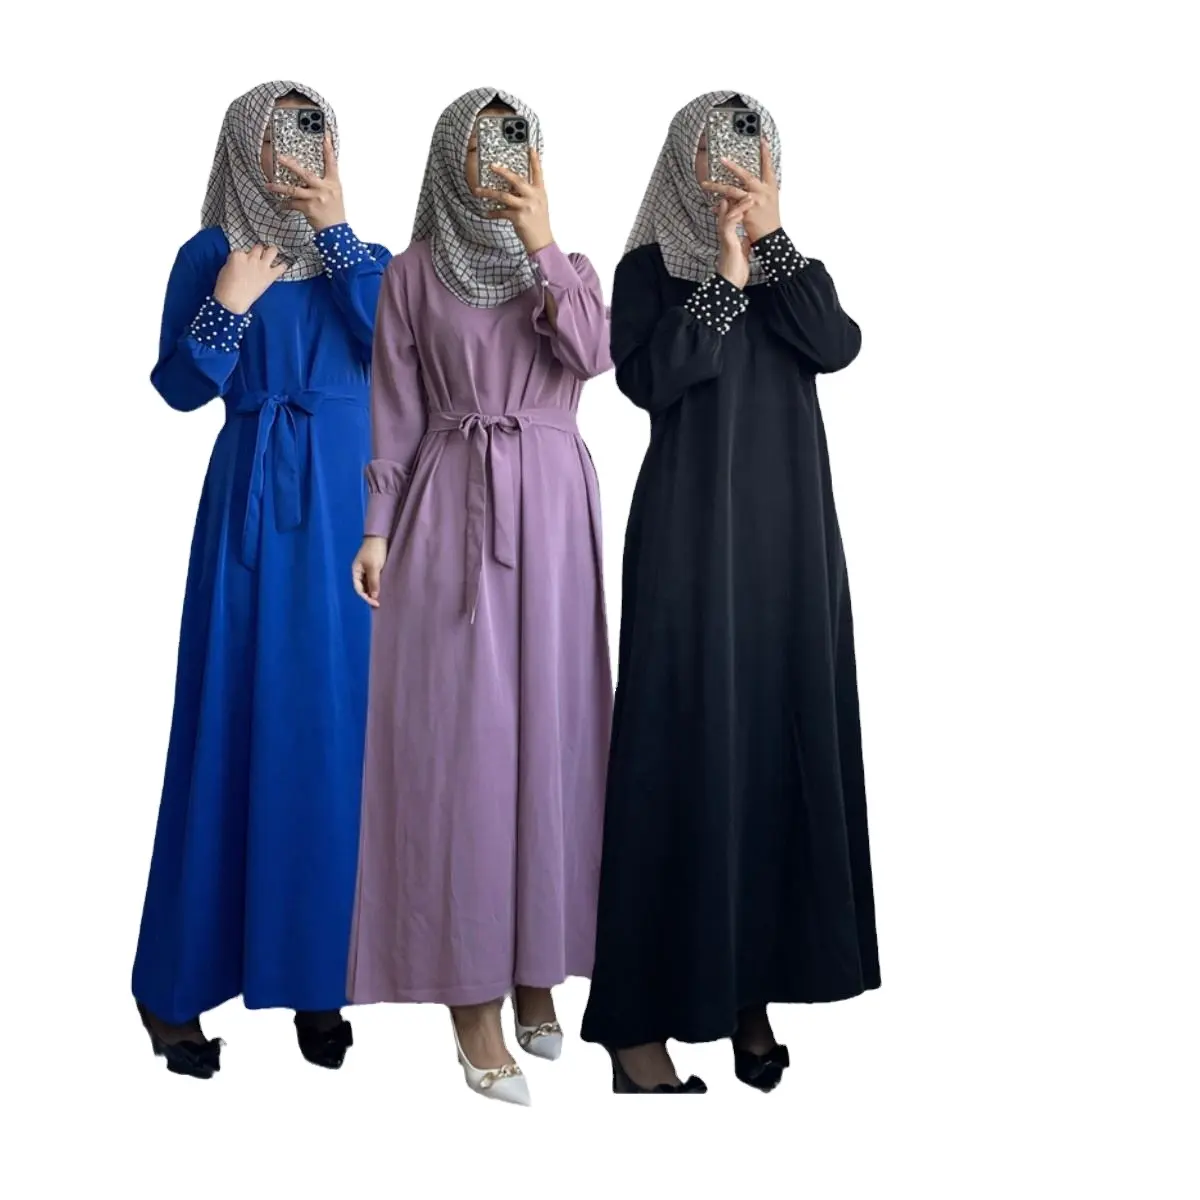 중동 여성의 이슬람기도 드레스 히잡 이슬람 아바야 전체 길이 스커트 못 박힌 진주 가운 에스닉 롱 드레스